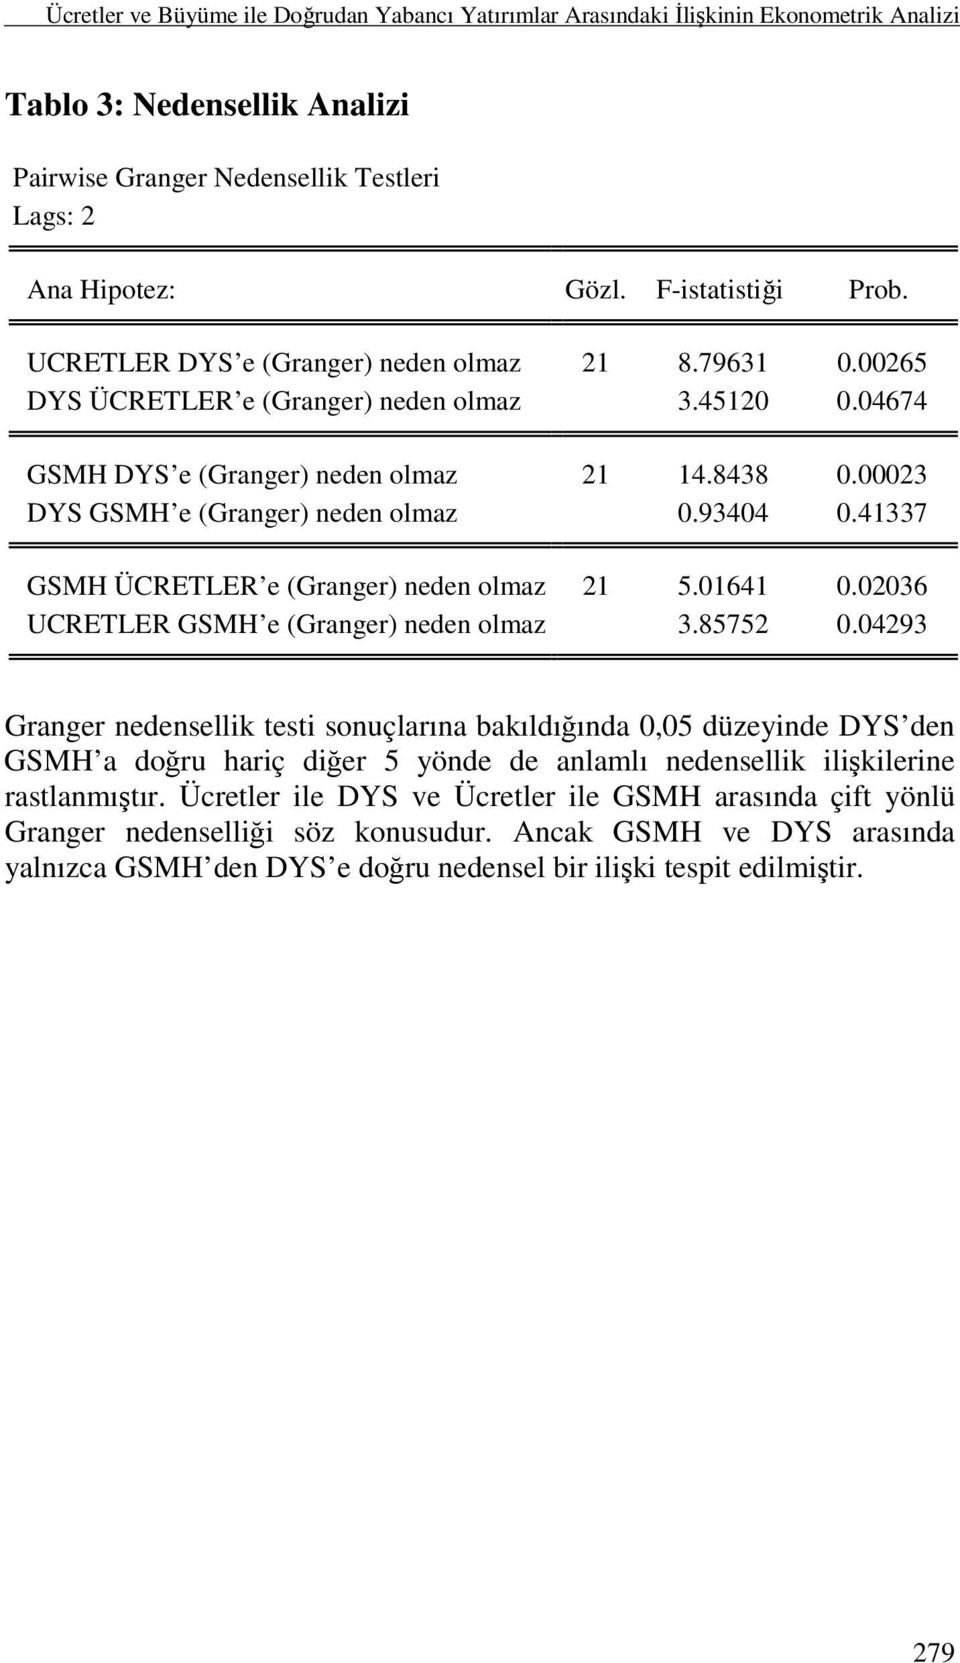 00023 DYS GSMH e (Granger) neden olmaz 0.93404 0.41337 GSMH ÜCRETLER e (Granger) neden olmaz 21 5.01641 0.02036 UCRETLER GSMH e (Granger) neden olmaz 3.85752 0.